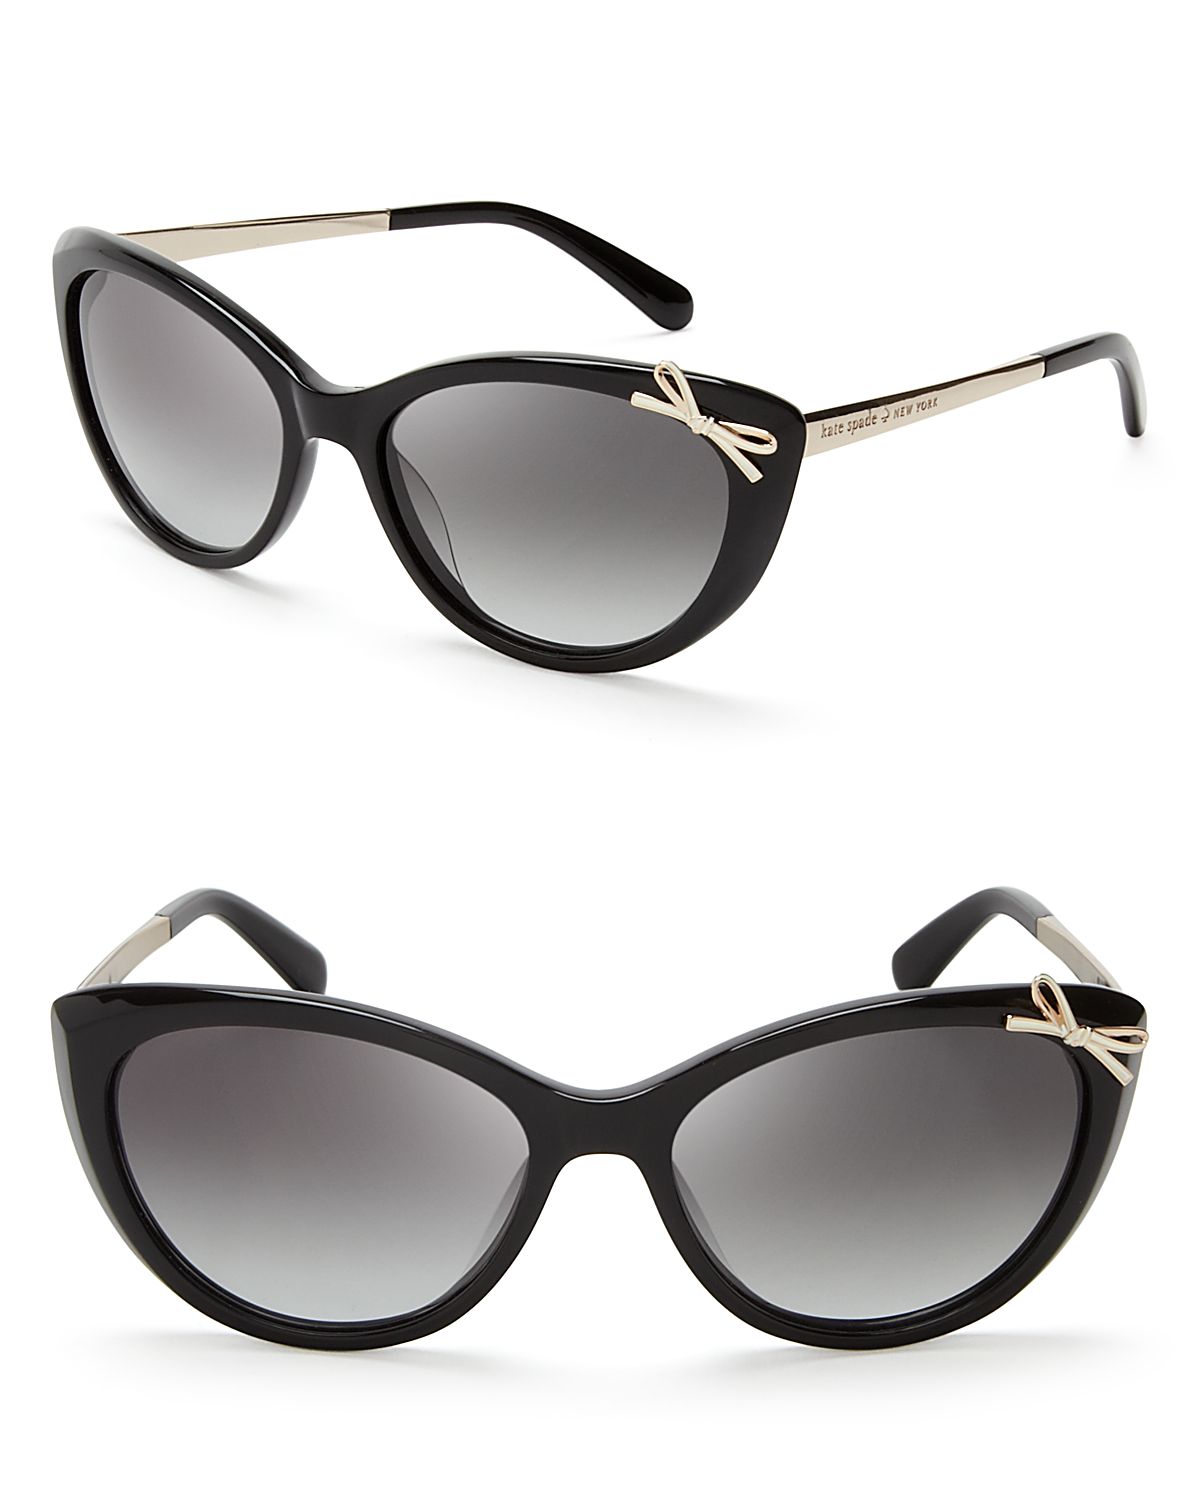 Kate Spade Livia 2 Cateye Sunglasses in Black - Lyst